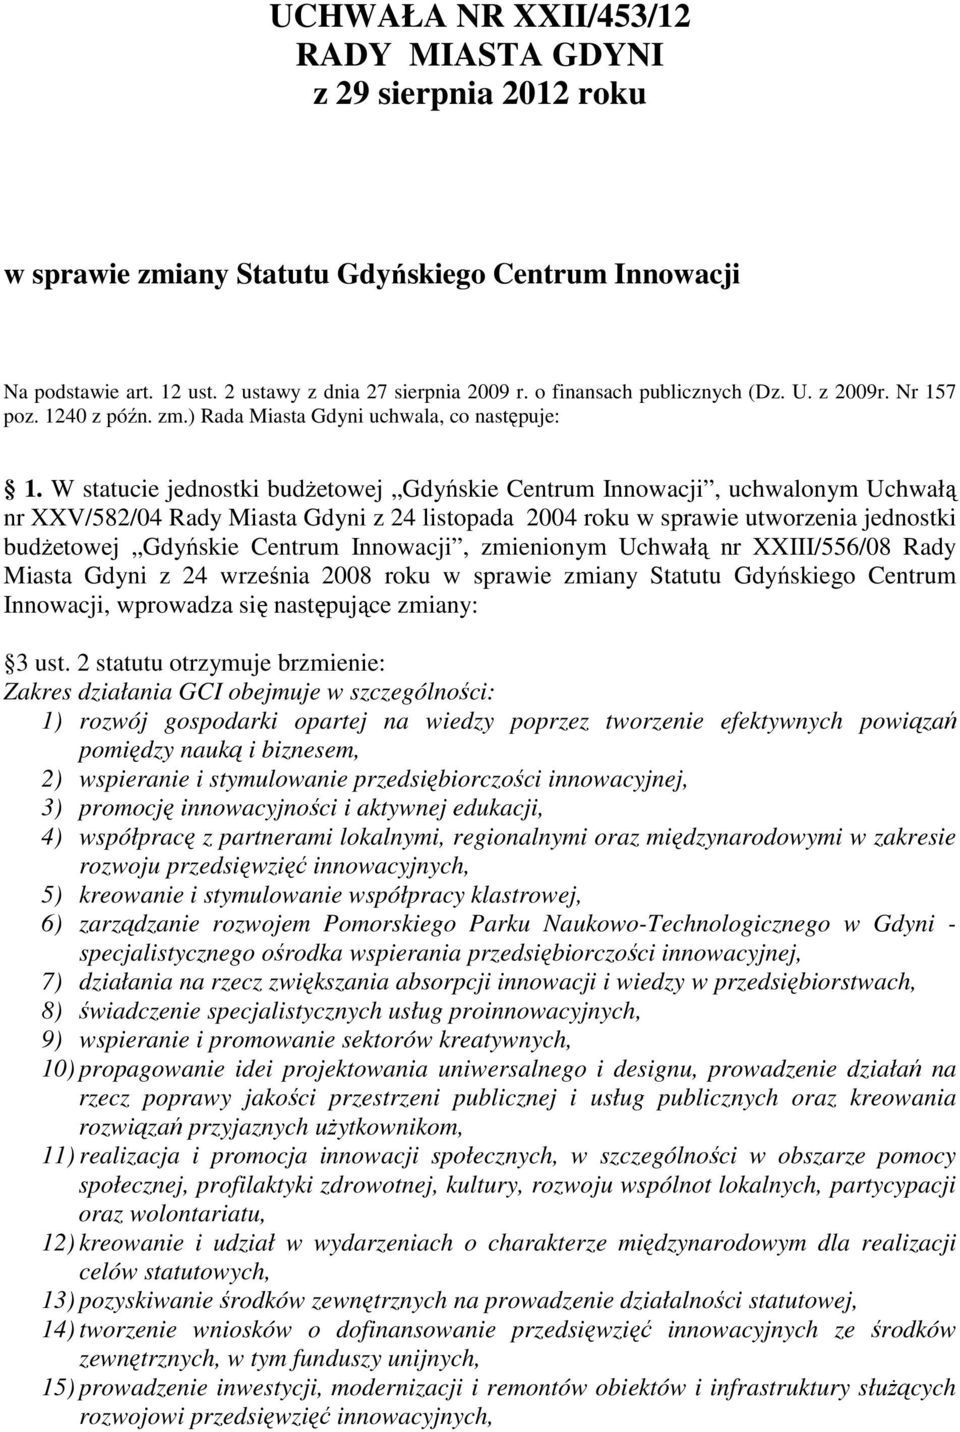 W statucie jednostki budŝetowej Gdyńskie Centrum Innowacji, uchwalonym Uchwałą nr XXV/582/04 Rady Miasta Gdyni z 24 listopada 2004 roku w sprawie utworzenia jednostki budŝetowej Gdyńskie Centrum